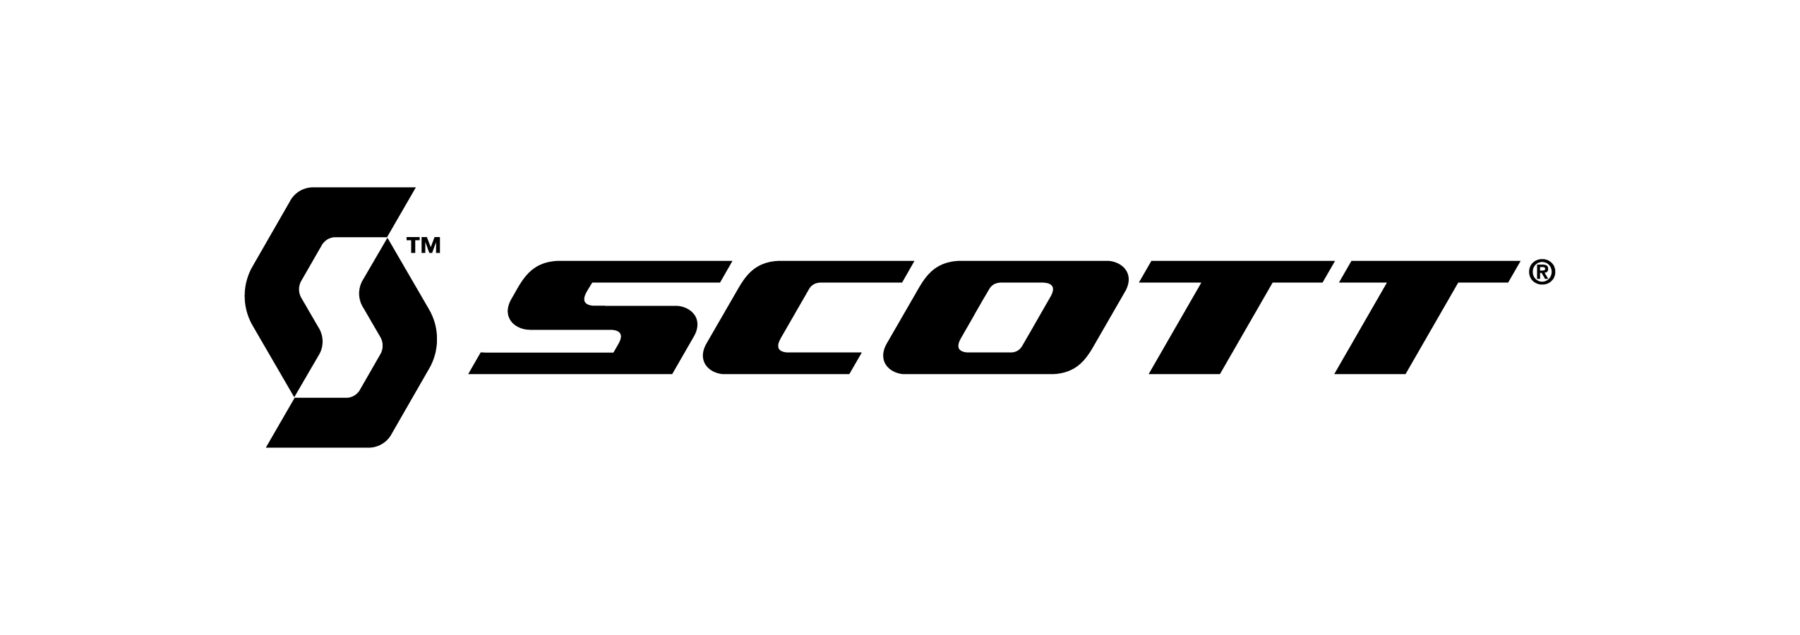 Scott Sports SA